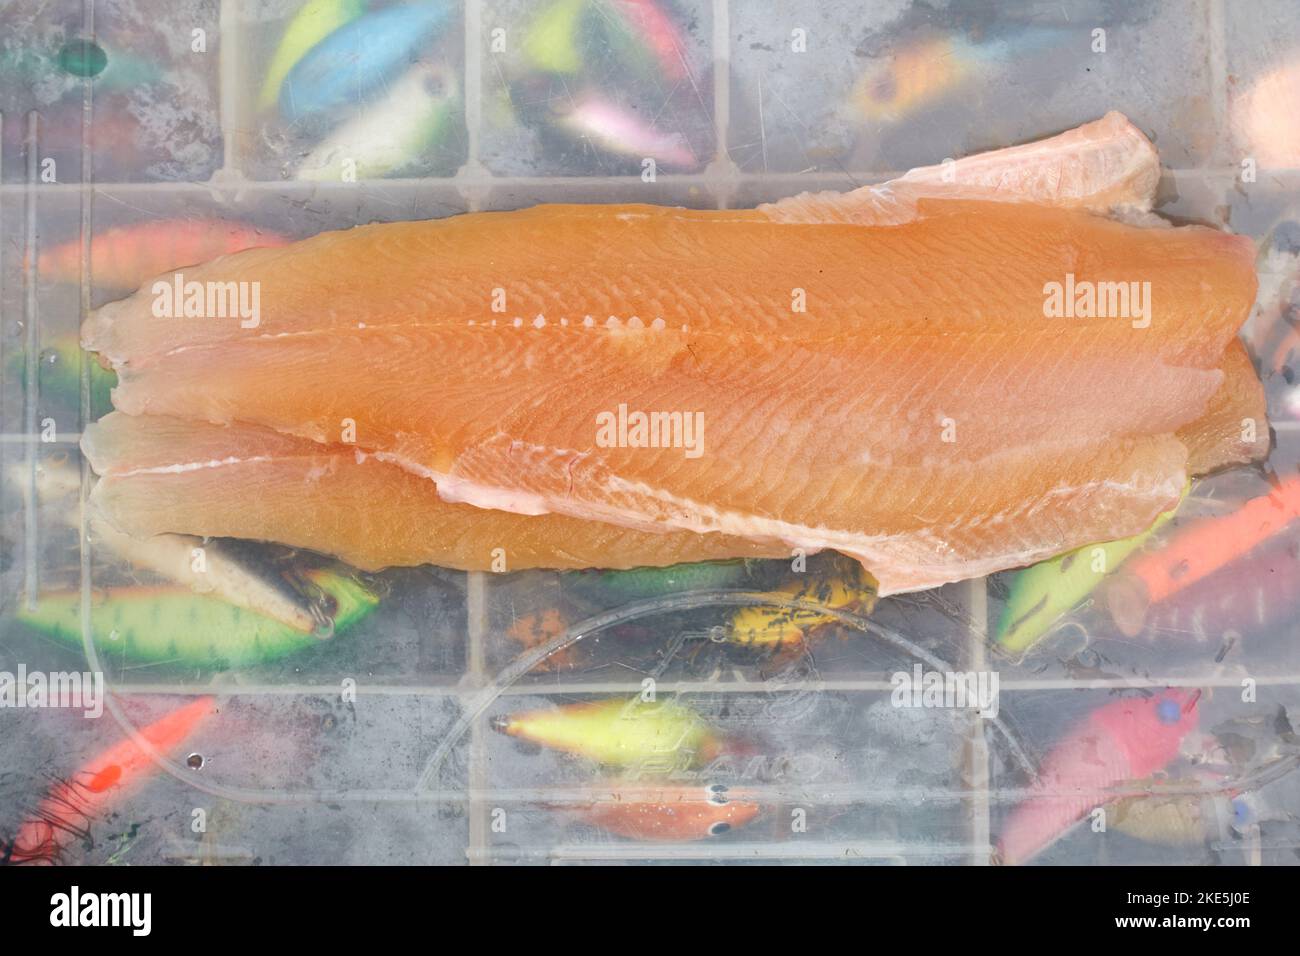 Kiiruna, Suède - 18 juillet 2022 : deux filets de truite fraîchement pêchés sur une boîte transparente pleine de leurres colorées en Laponie suédoise. Banque D'Images